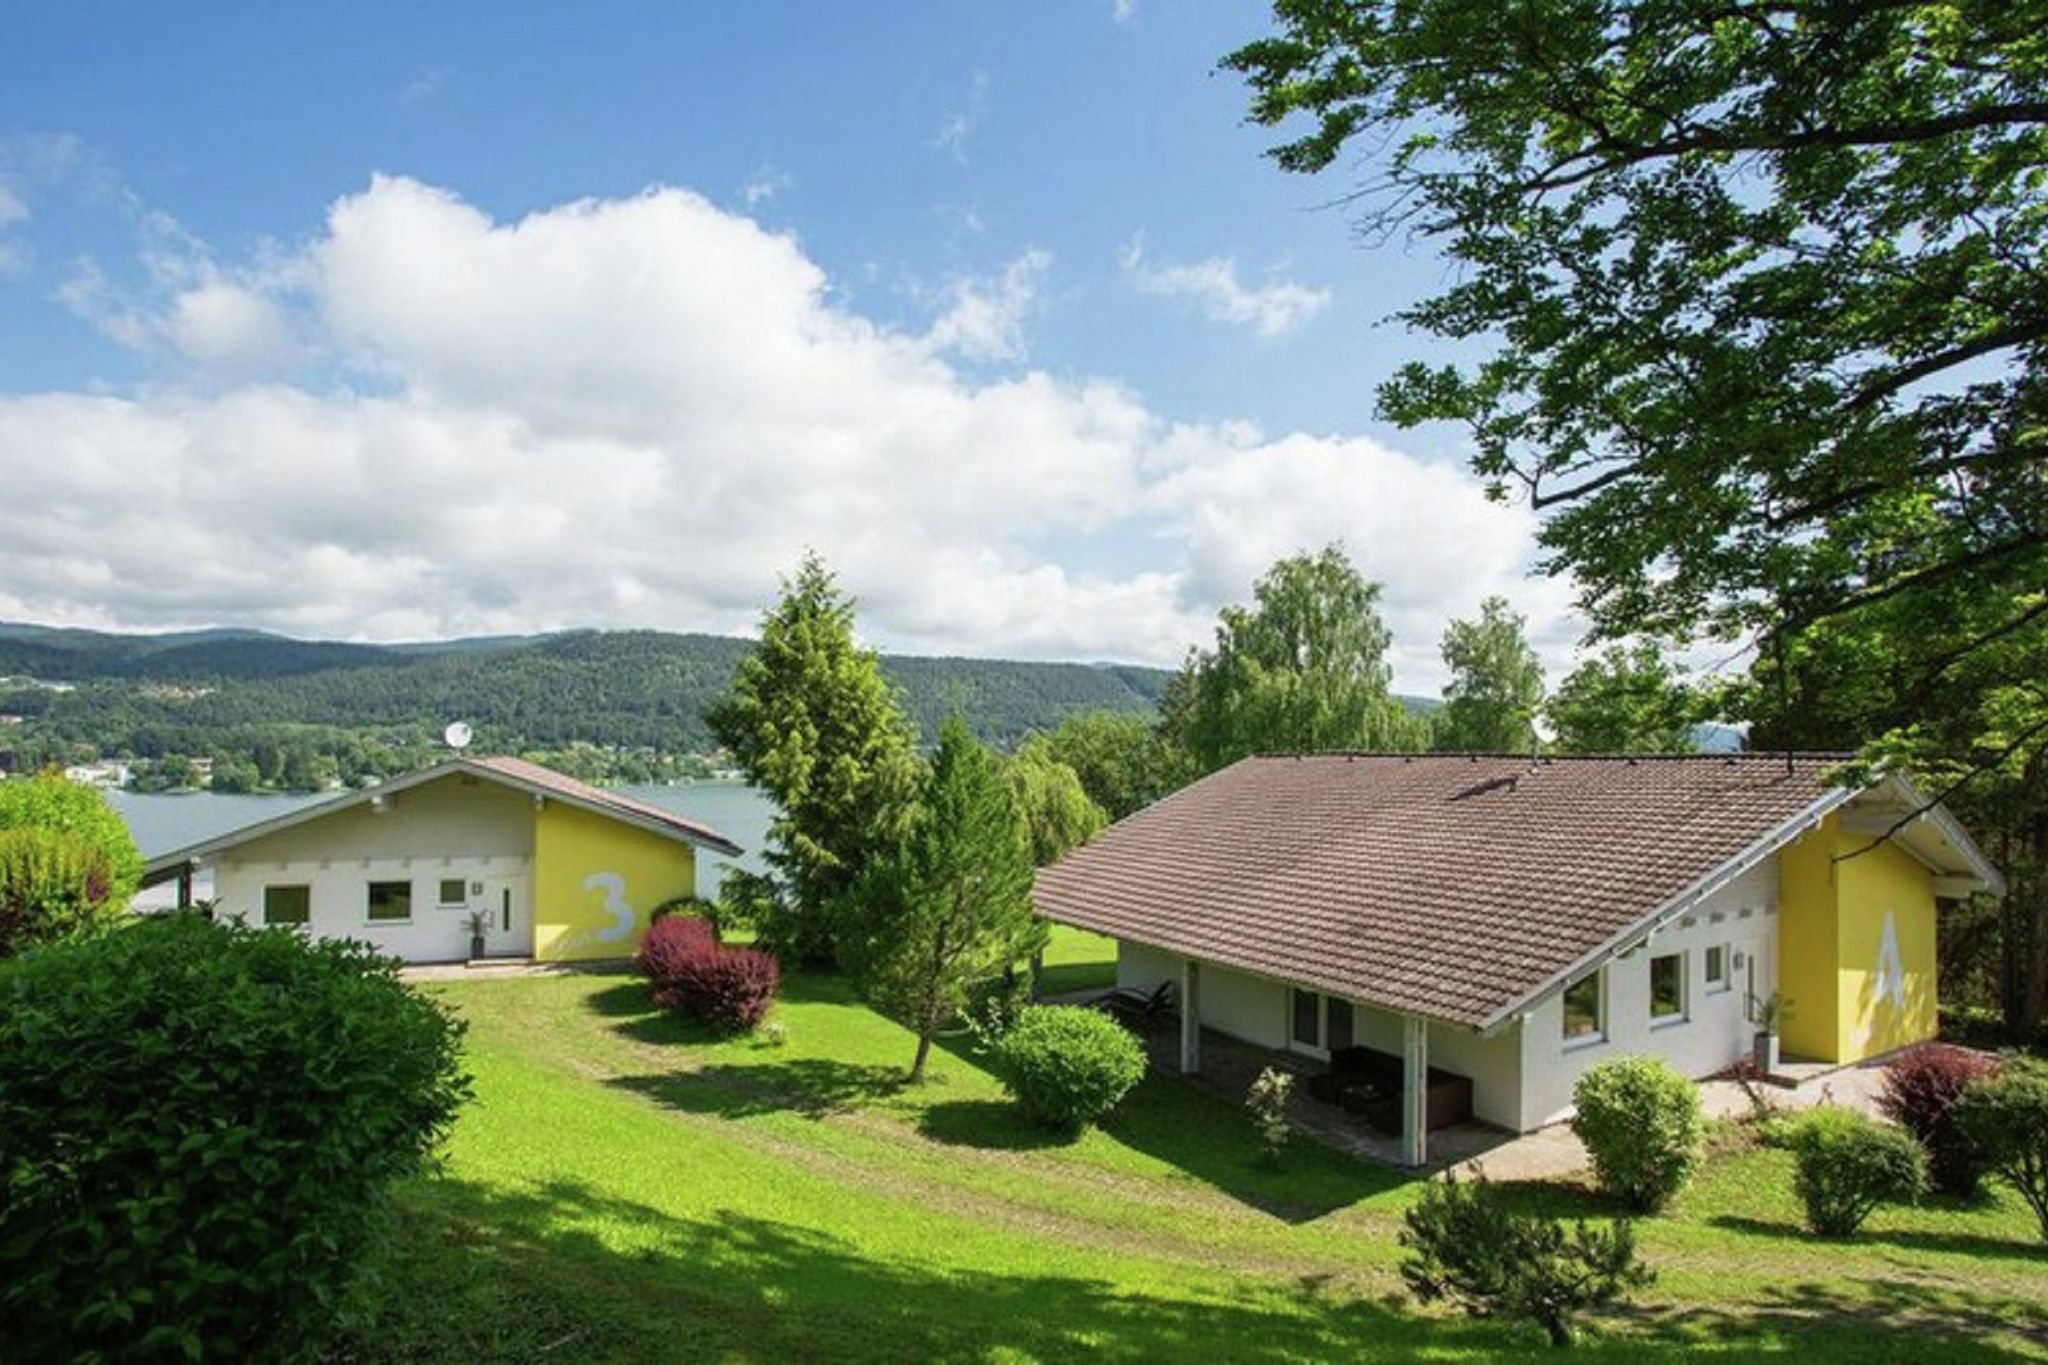 Imperial Villa in Velden am Wörthersee near Ski-Area & BBq